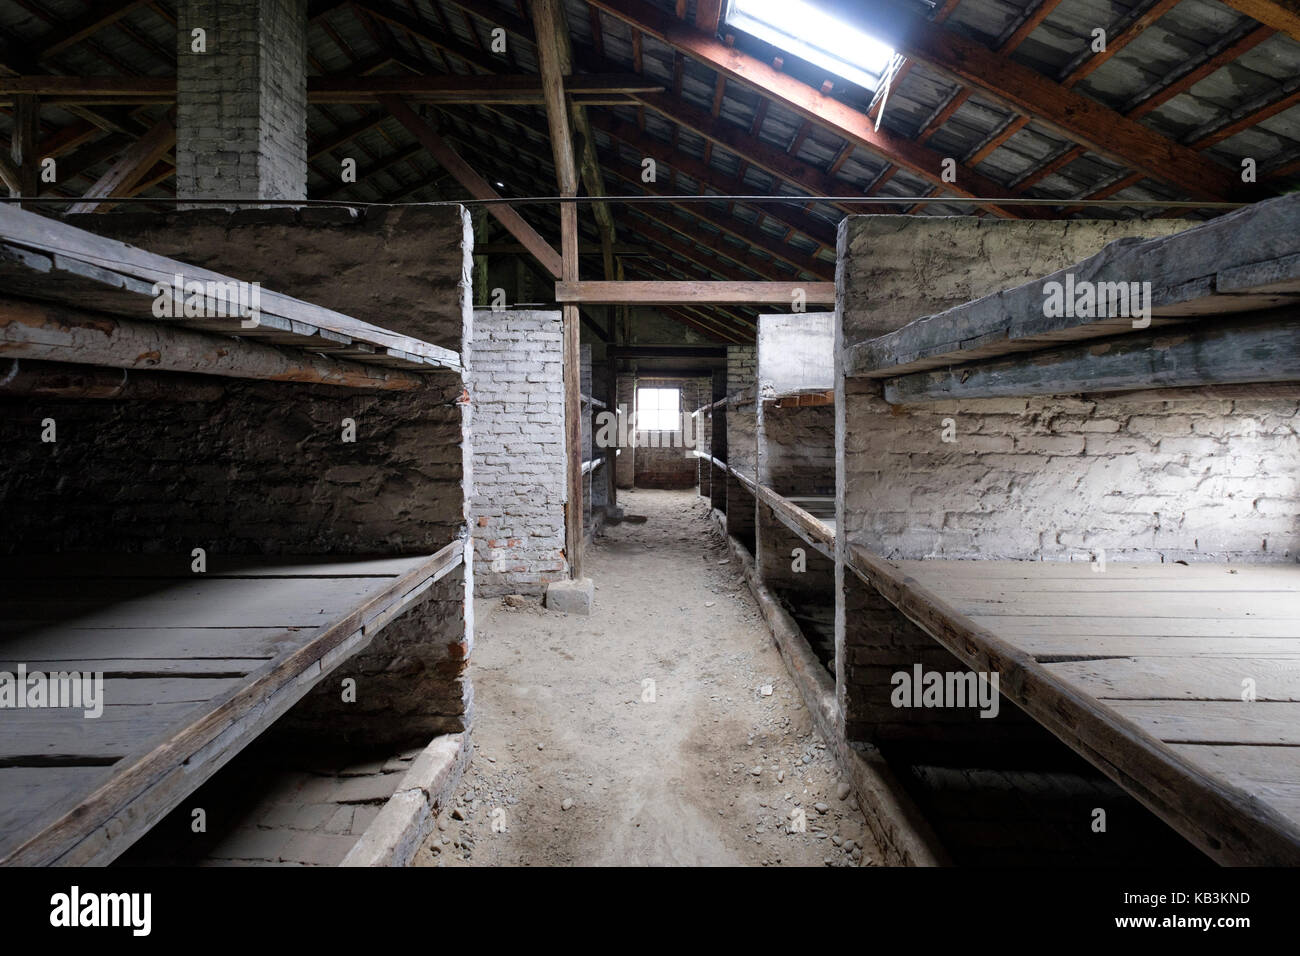 Prisoners barracks at Auschwitz II Birkenau WWII Nazi concentration camp, Poland Stock Photo